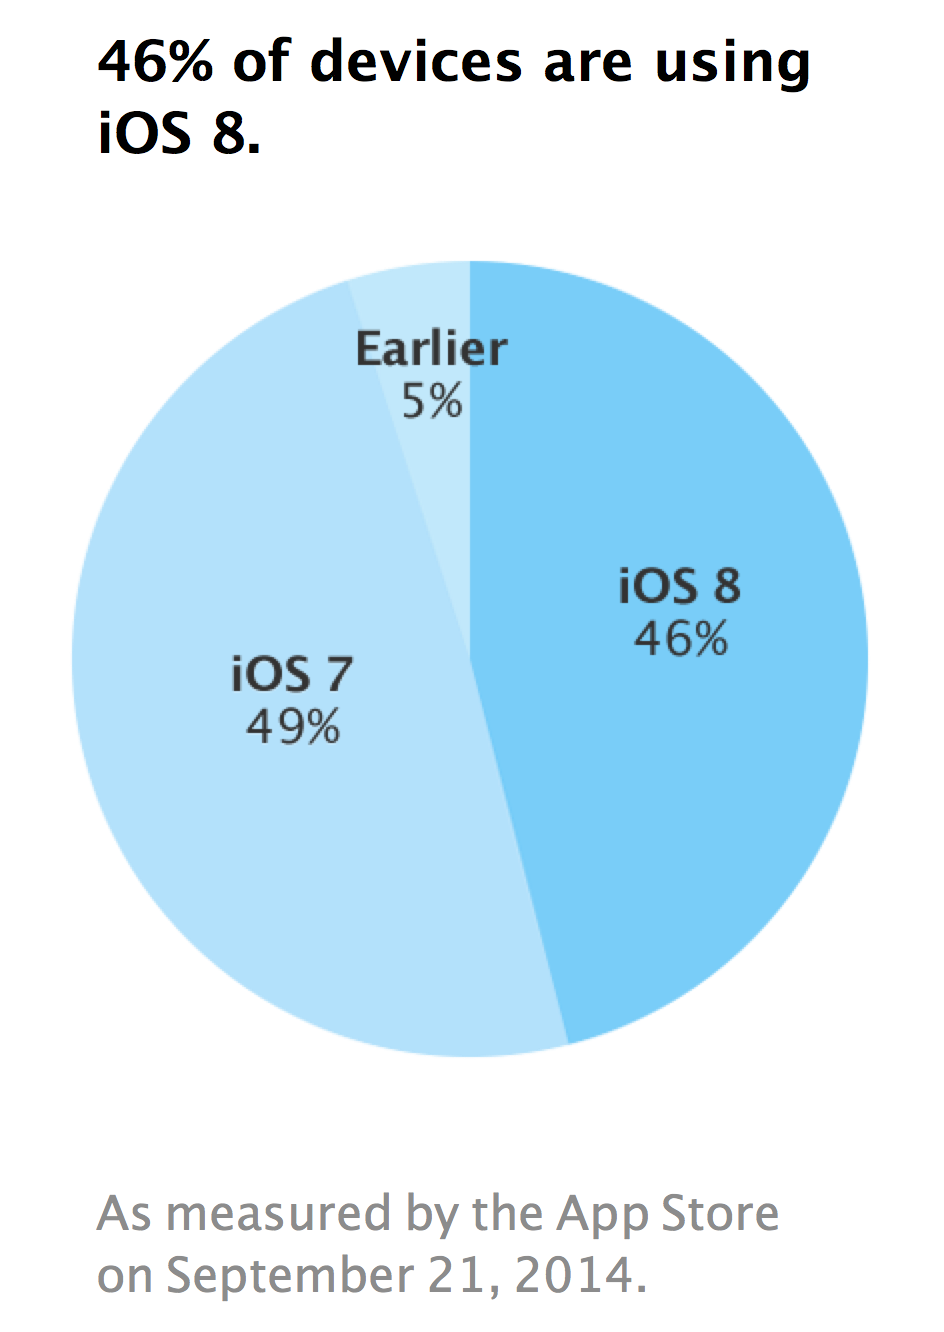 Apple Announces iOS 8 Adoption Has Already Reached 46%